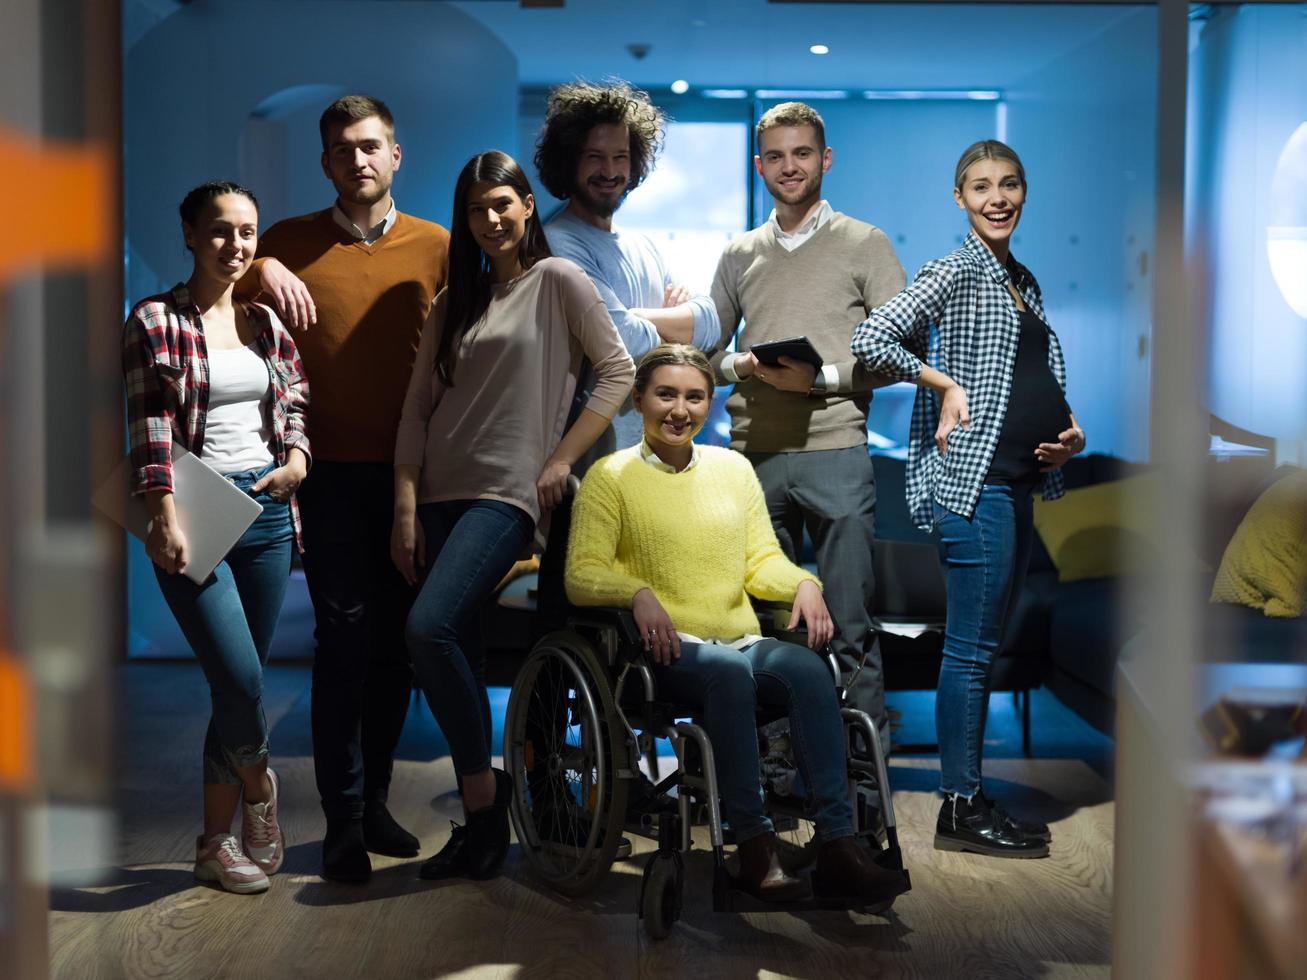 Inaktiverad affärskvinna i en rullstol på de kontor med medarbetare team foto